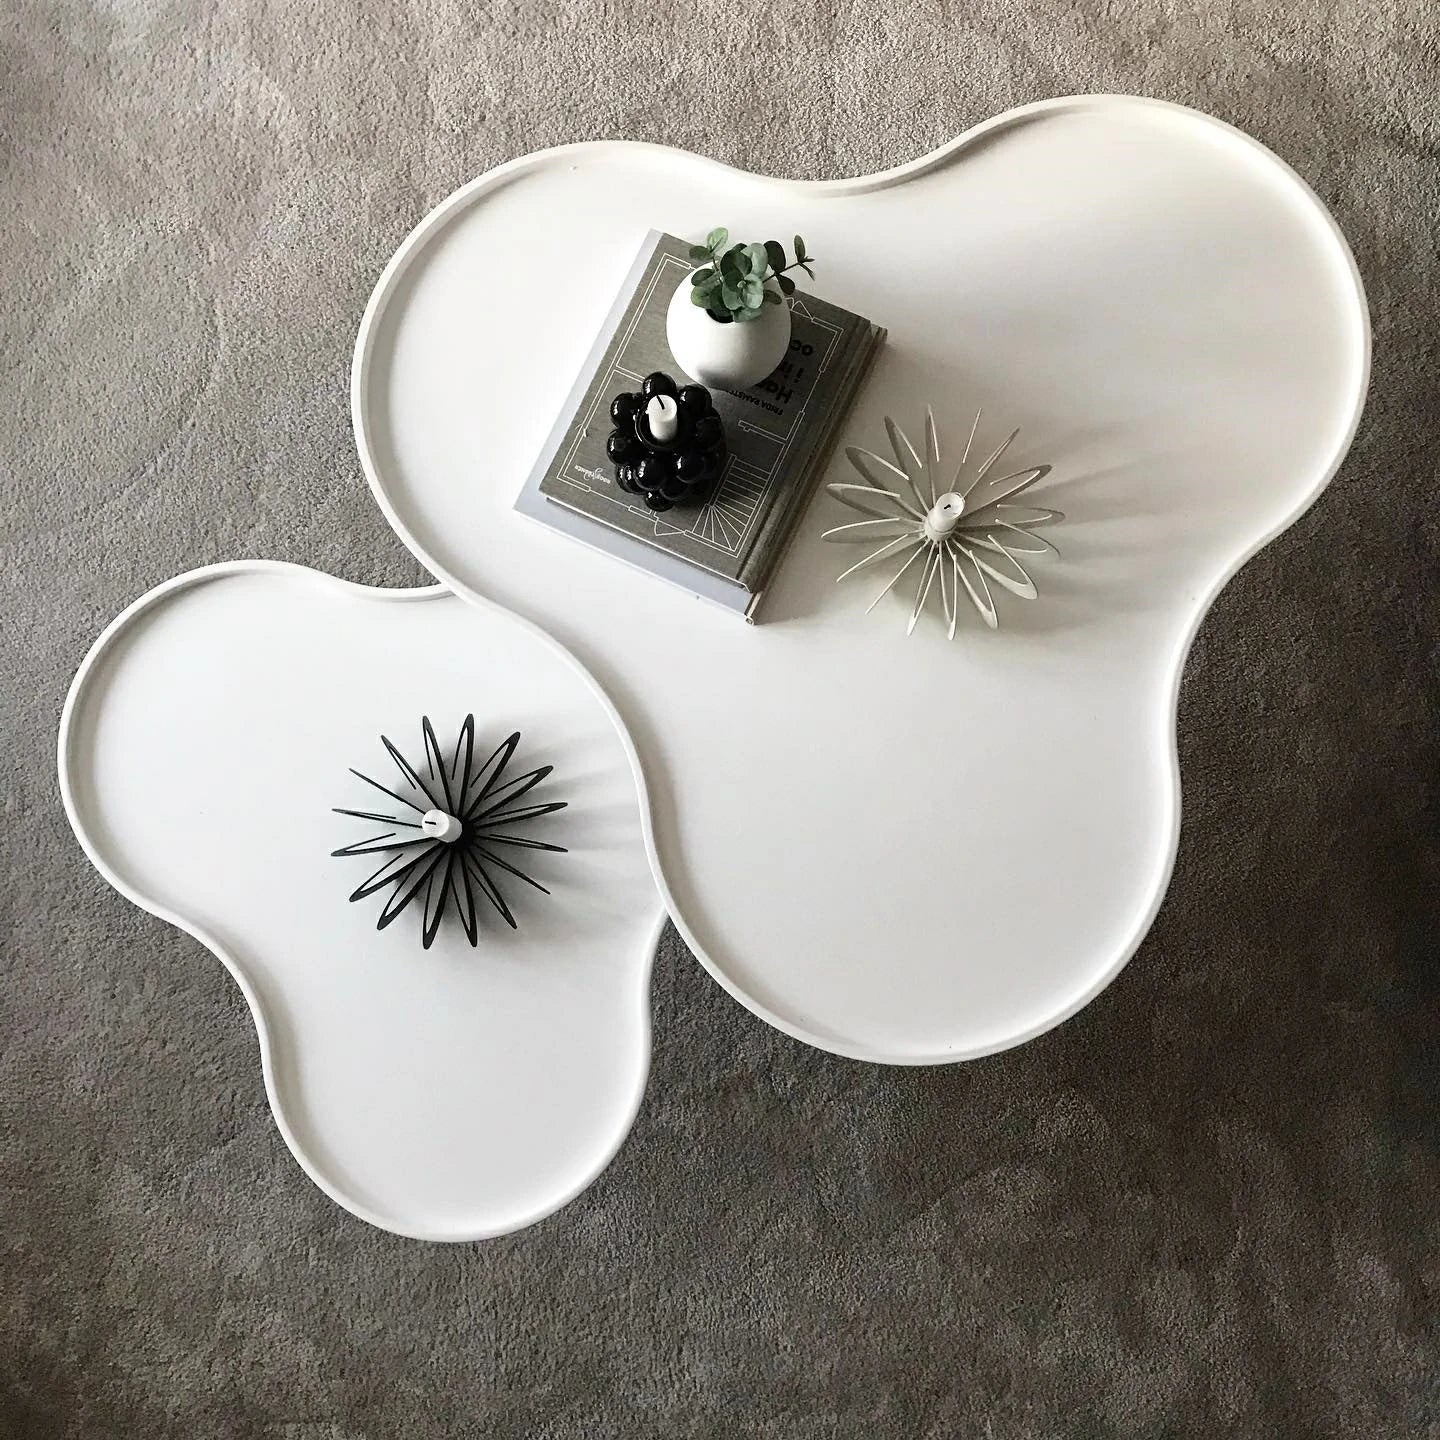 Flower Mono Coffee Table white